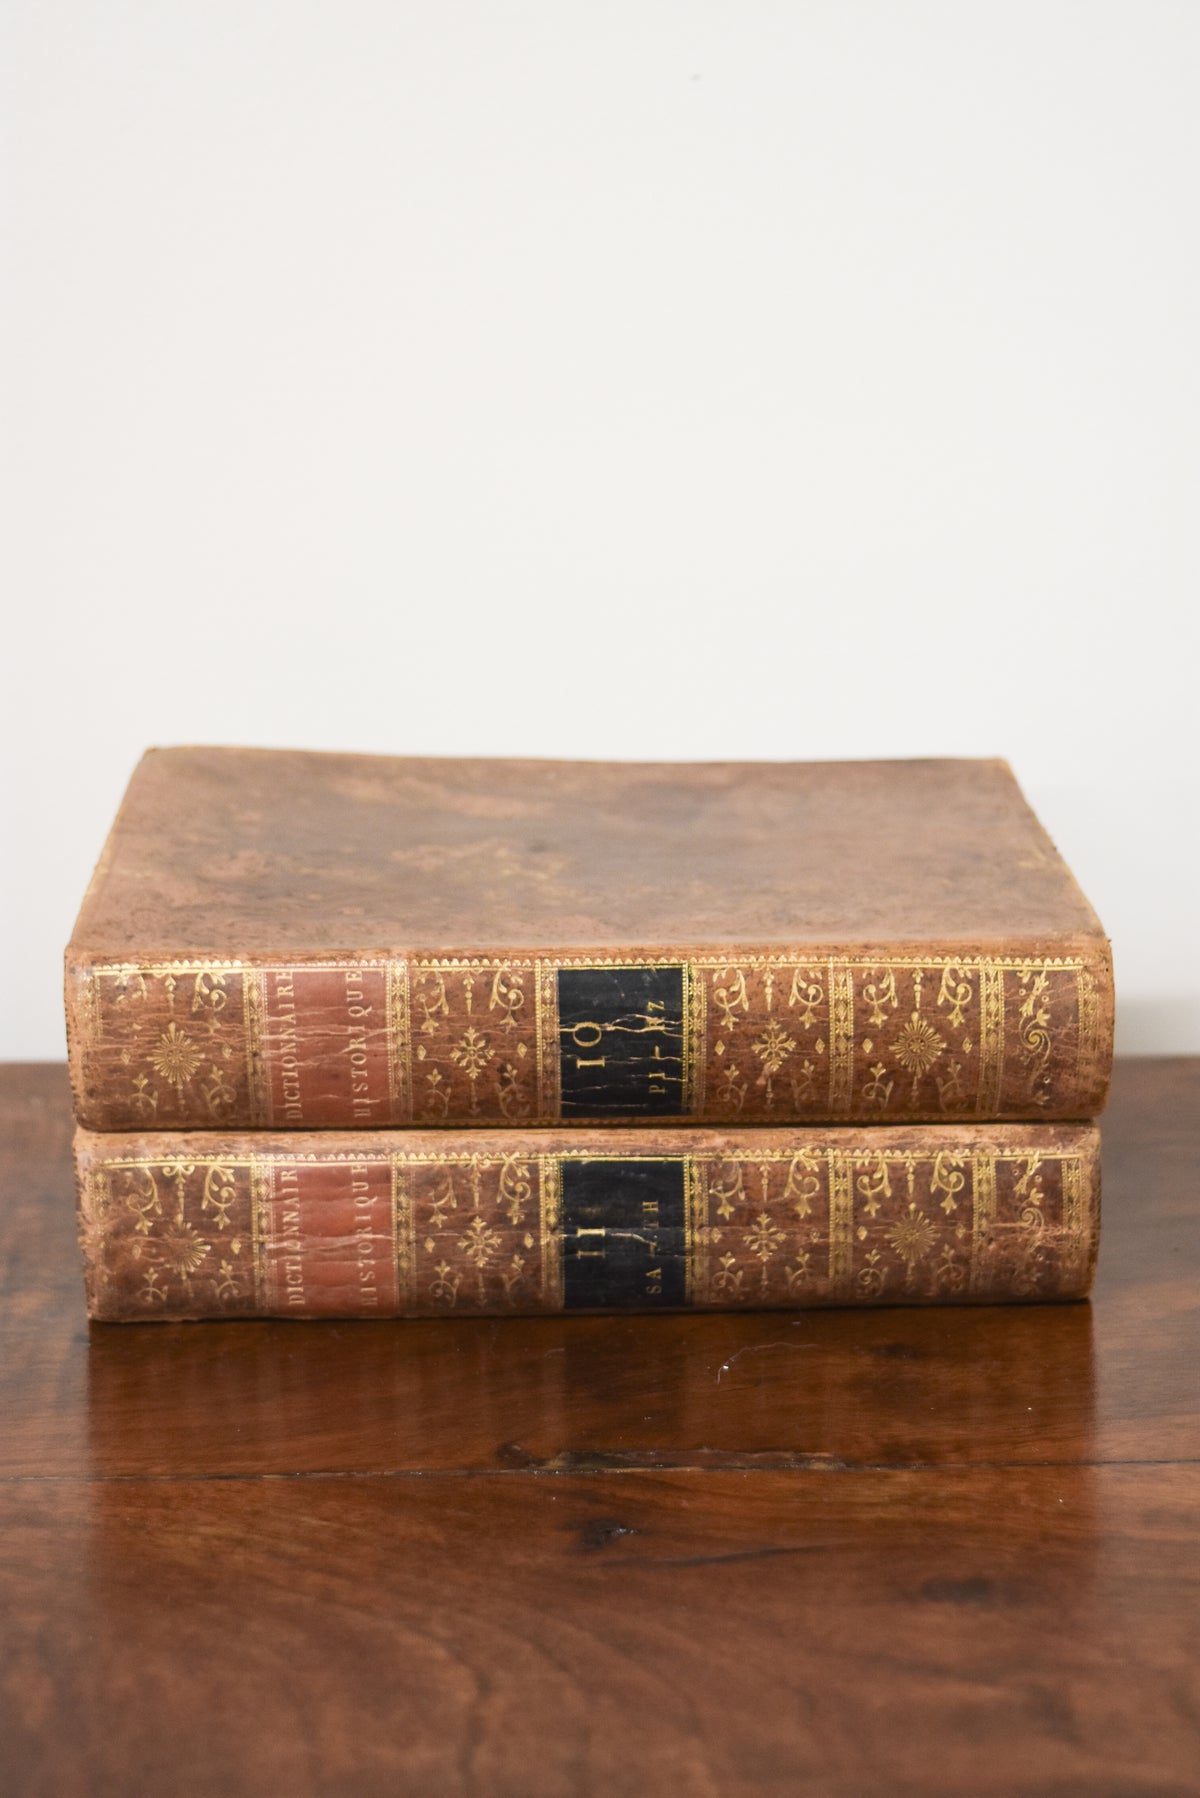 Pair of Dictionaire Historique Antique Leatherback Books